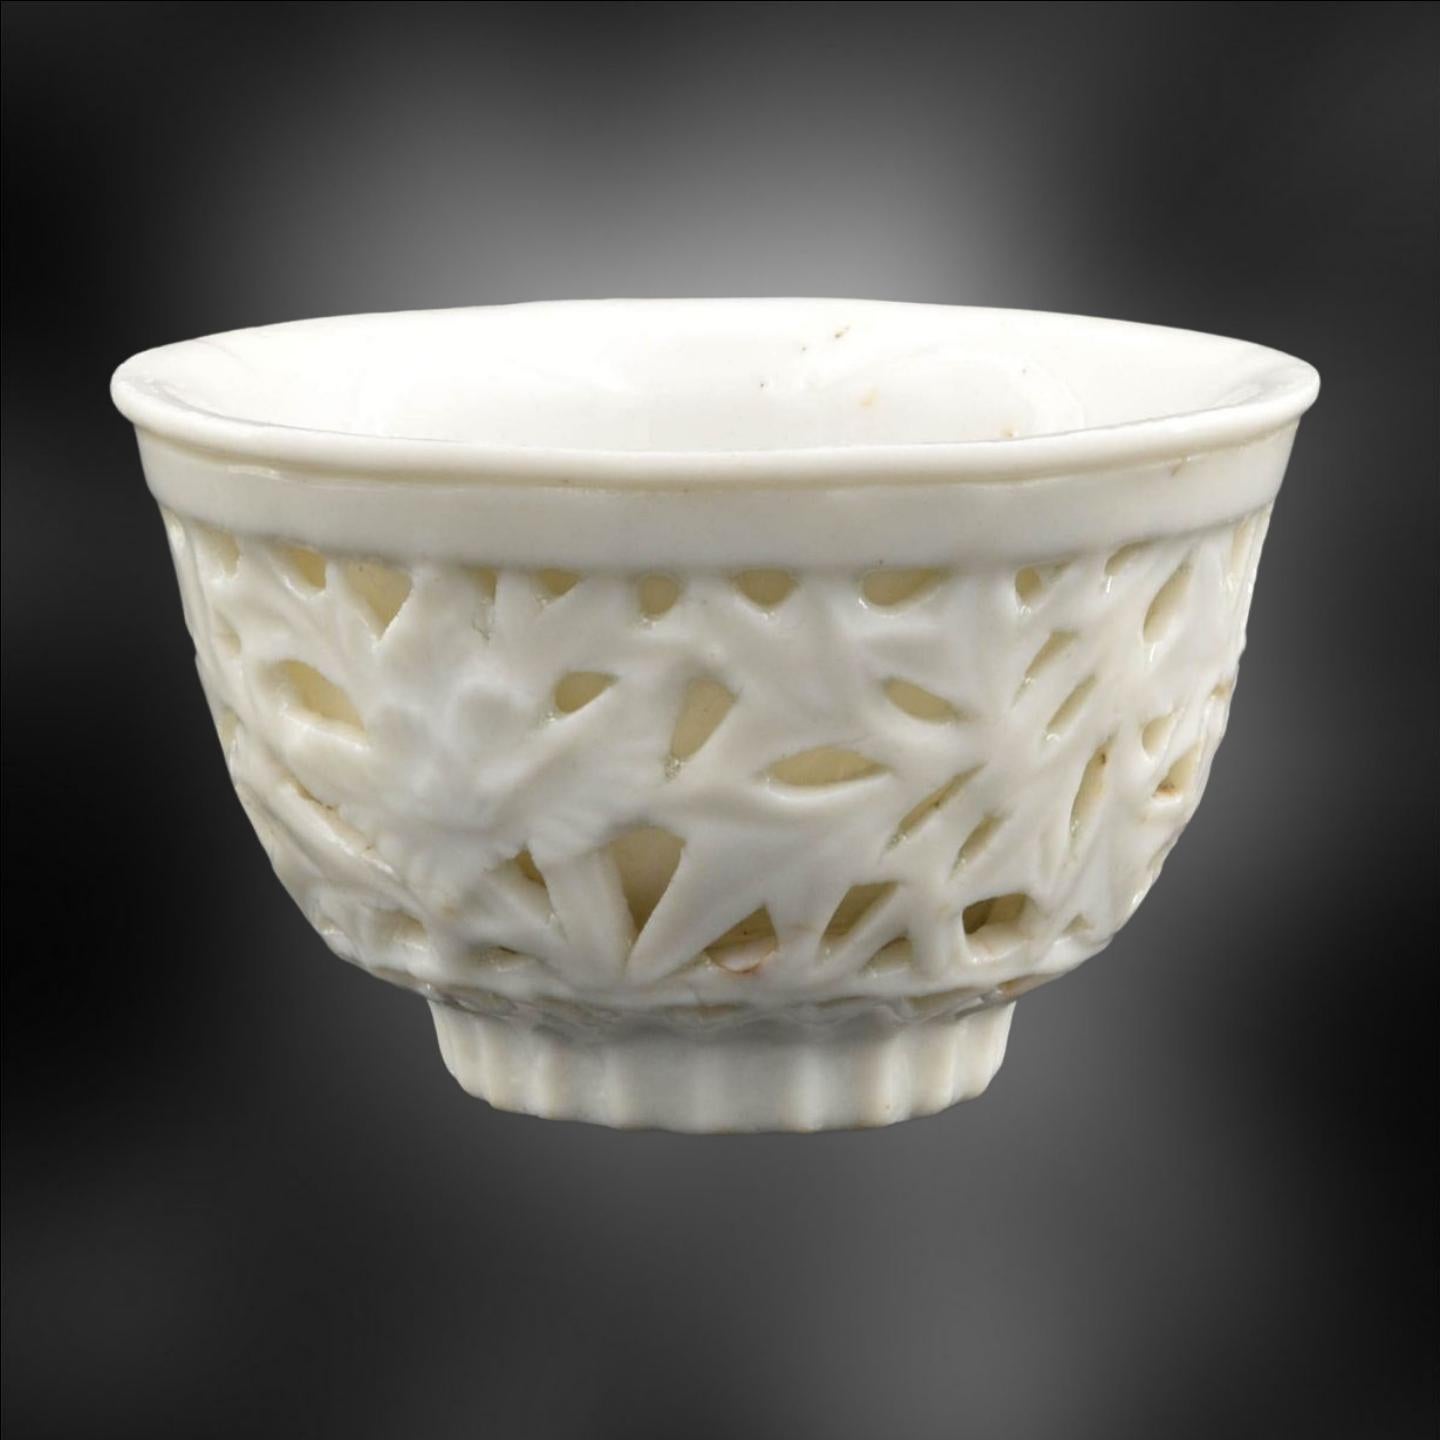 Il s'agit d'un superbe bol à thé antique Blanc de Chine à double paroi ! Cette pièce élégante est parfaite pour les collectionneurs et les amateurs de porcelaine ancienne. La paroi extérieure perforée est moulée d'un magnifique motif de bambou